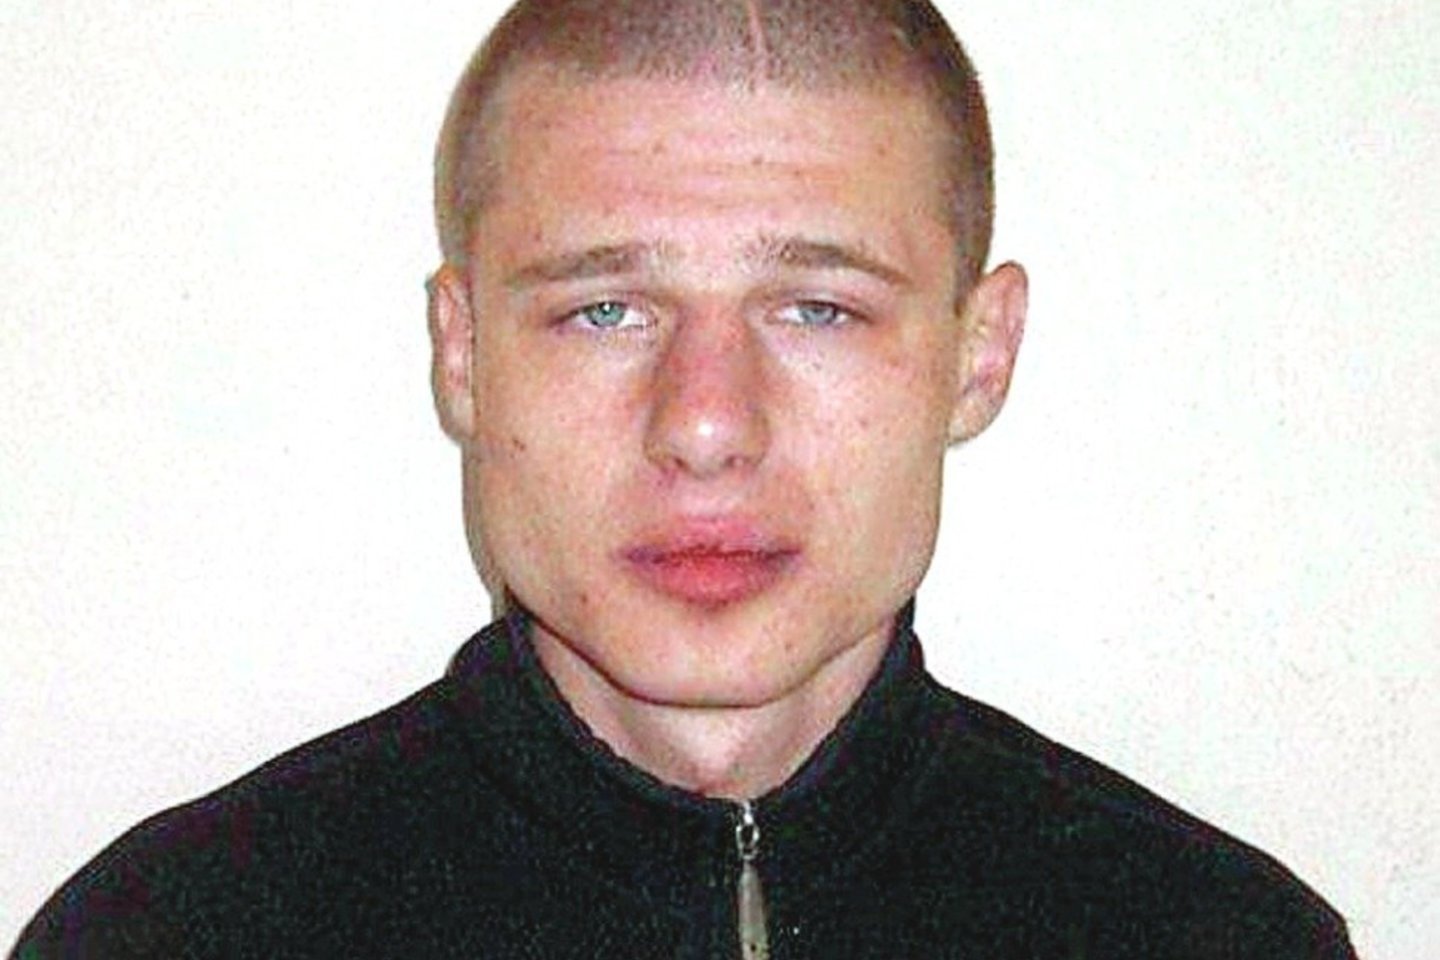  Marius Civinskas pagrįstai nuteistas dėl prieš 16 metų įvykdyto nužudymo.<br> Policijos nuotr.